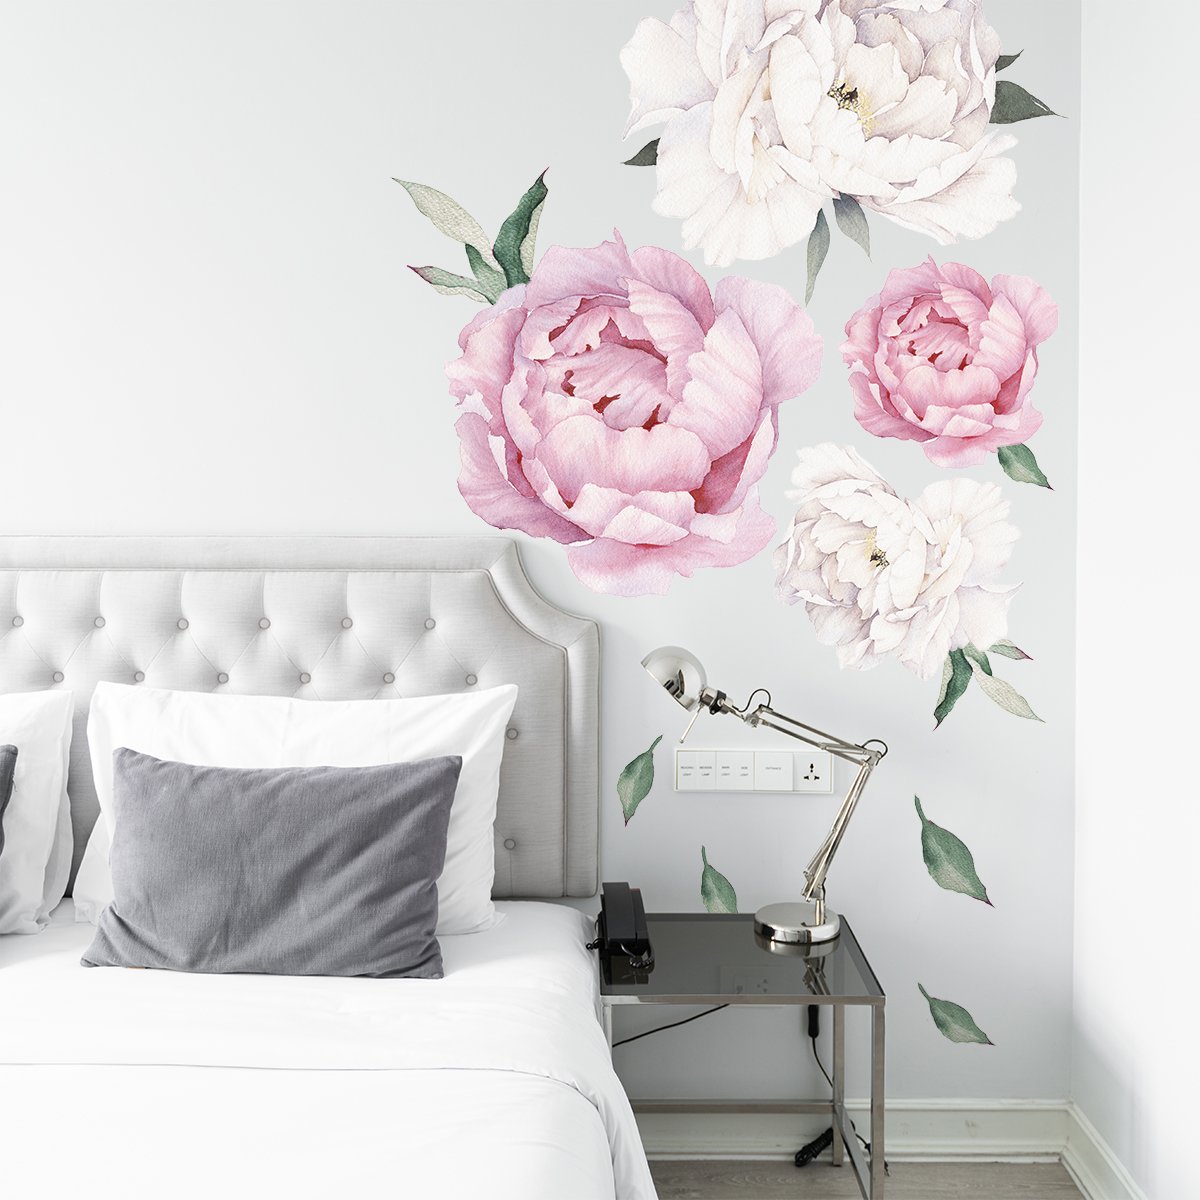 Naklejki na ścianę białe i różowe kwiaty do sypialni#kolor_rozowy